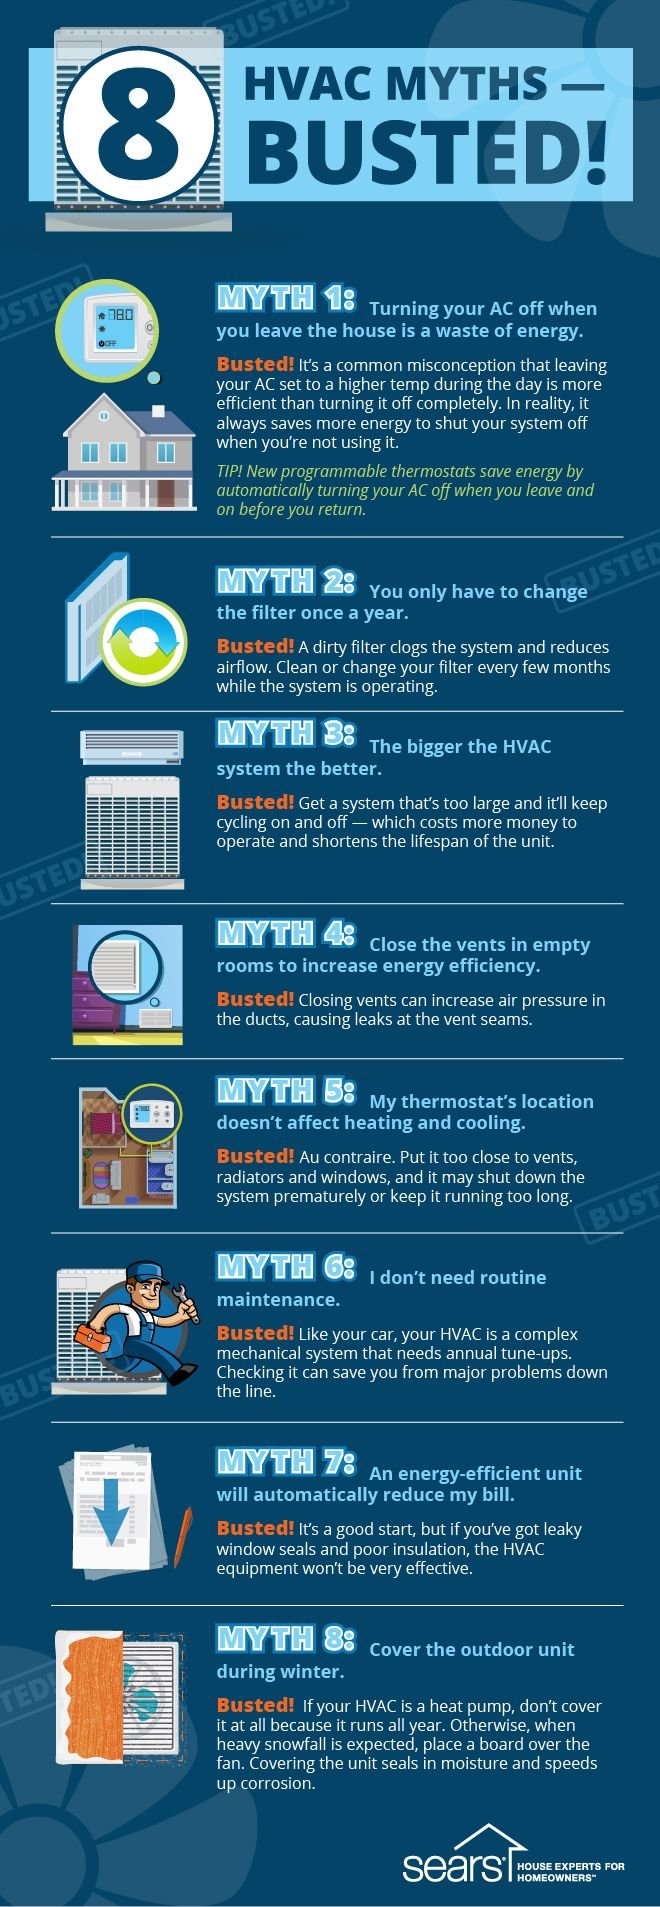 HVAC myths busted